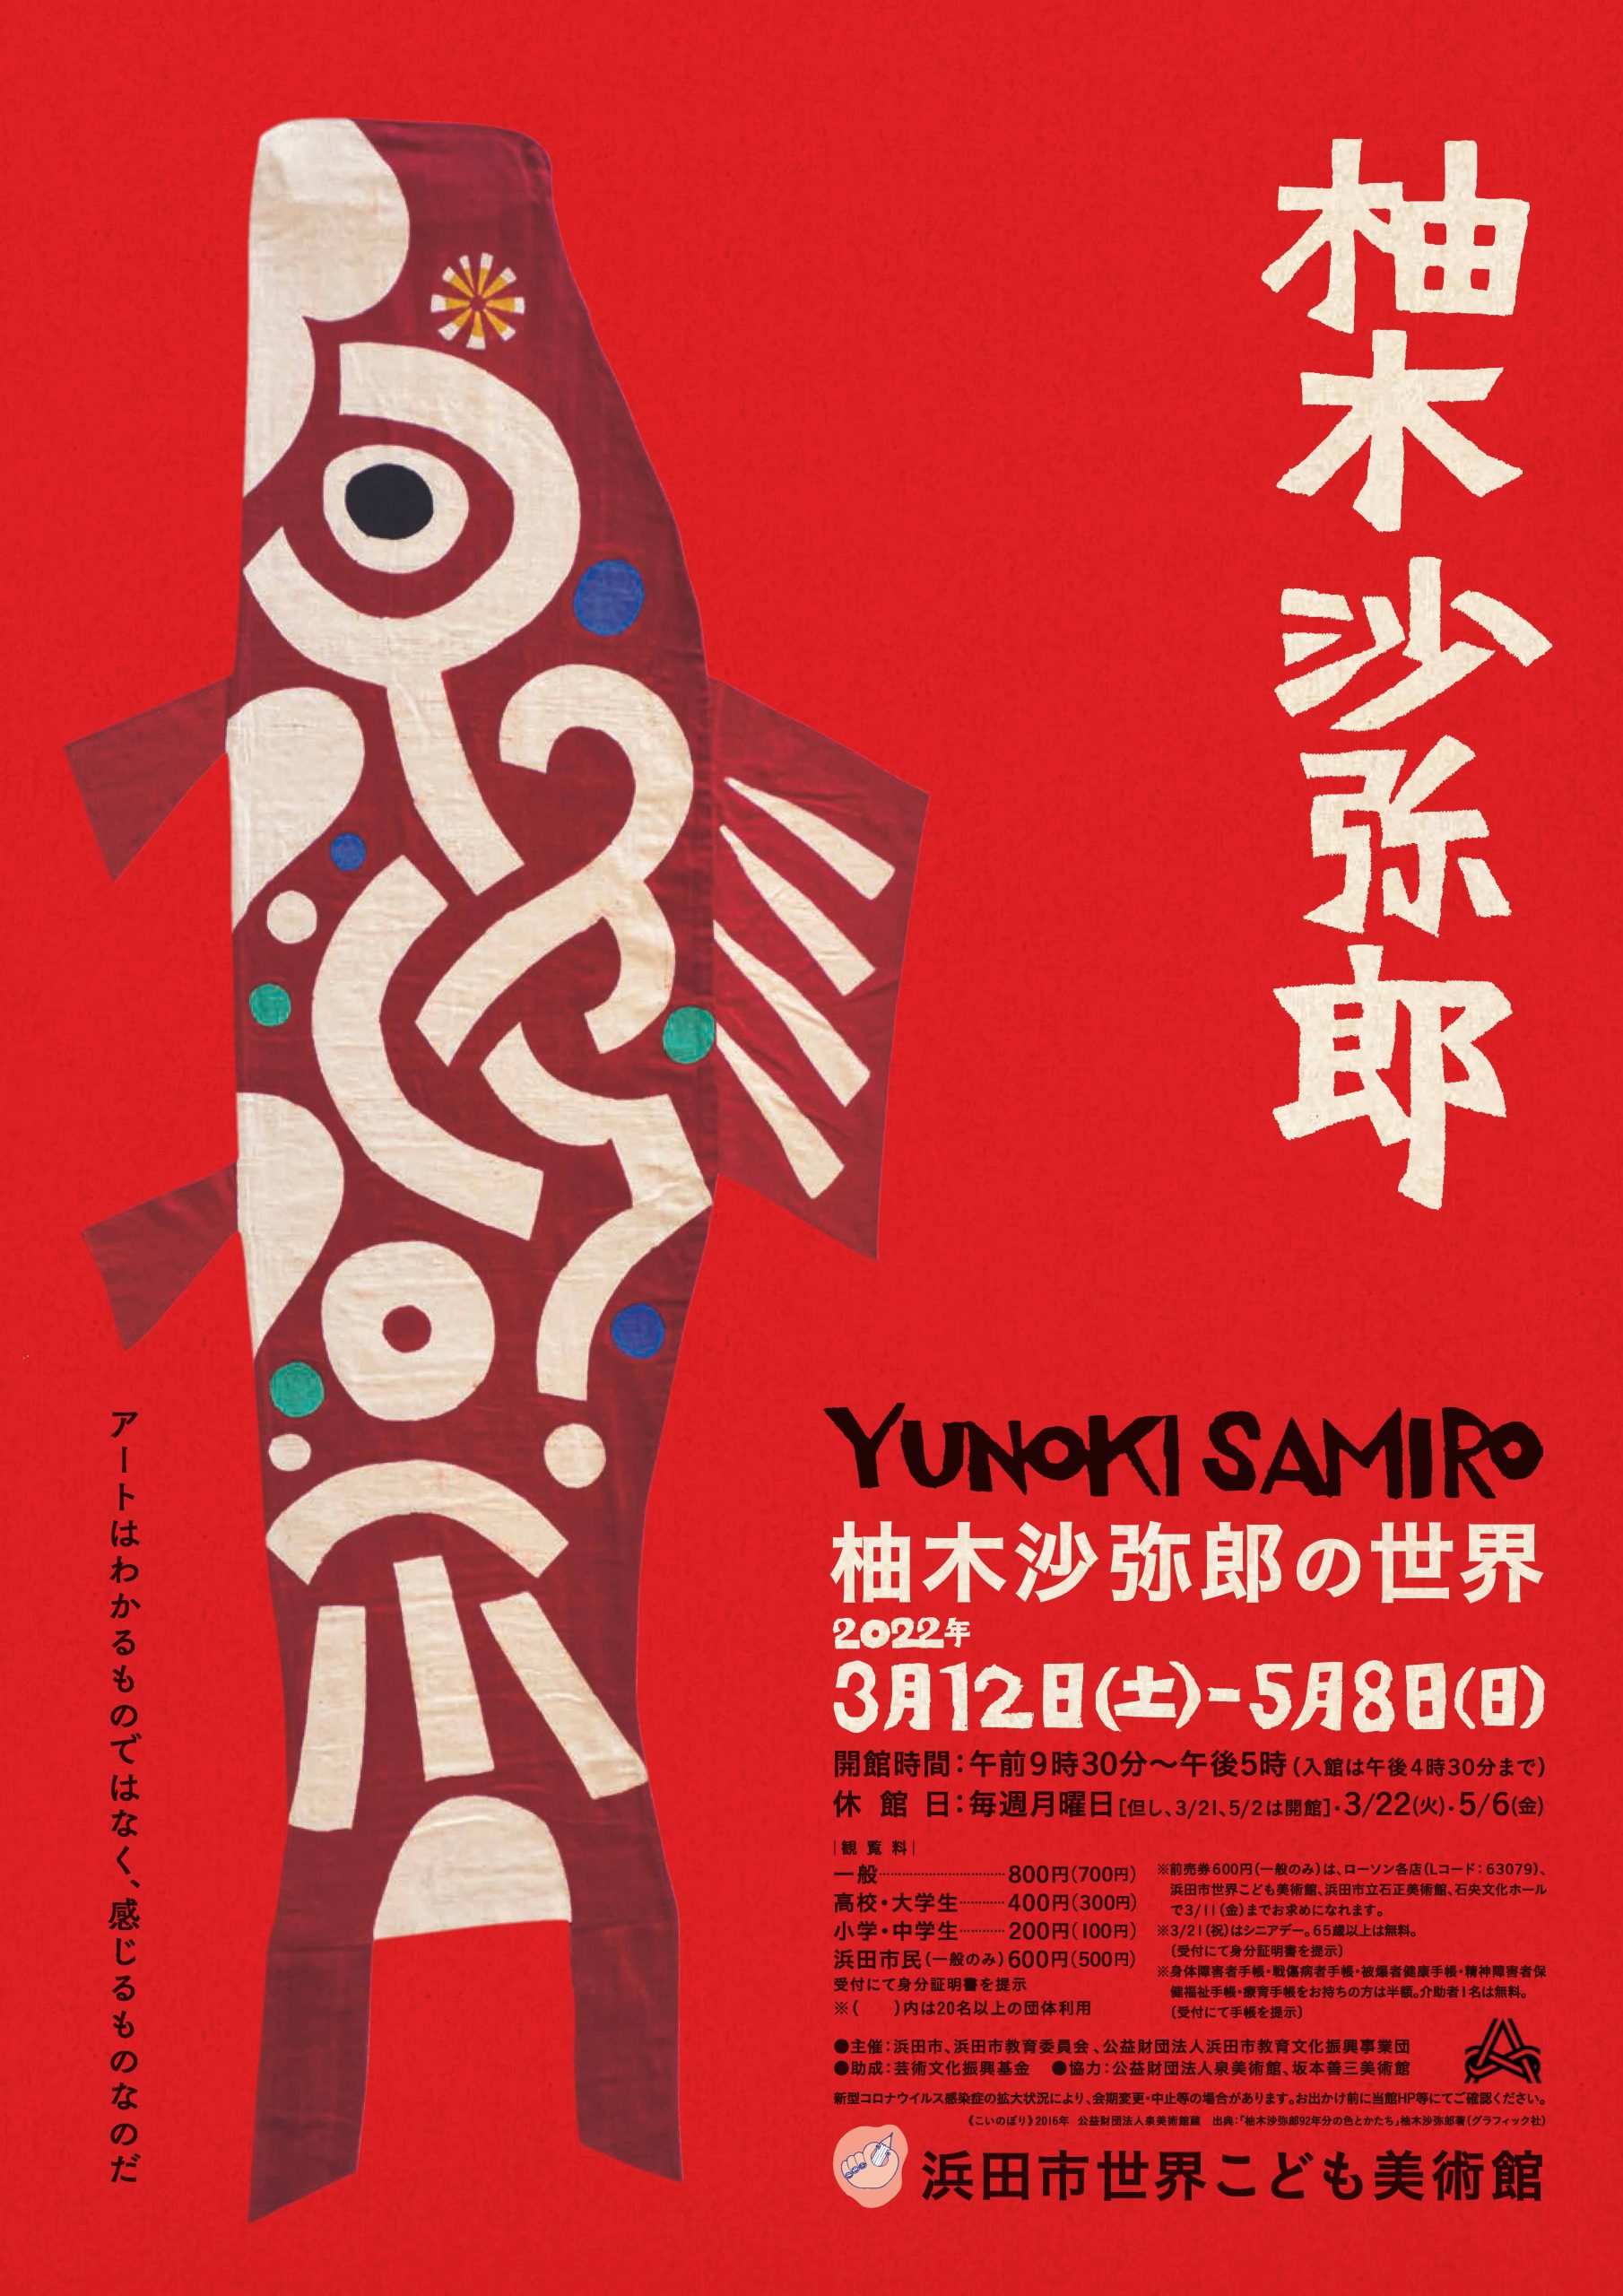 The World of Samiro Yunoki （Hamada Children's Museum of Art